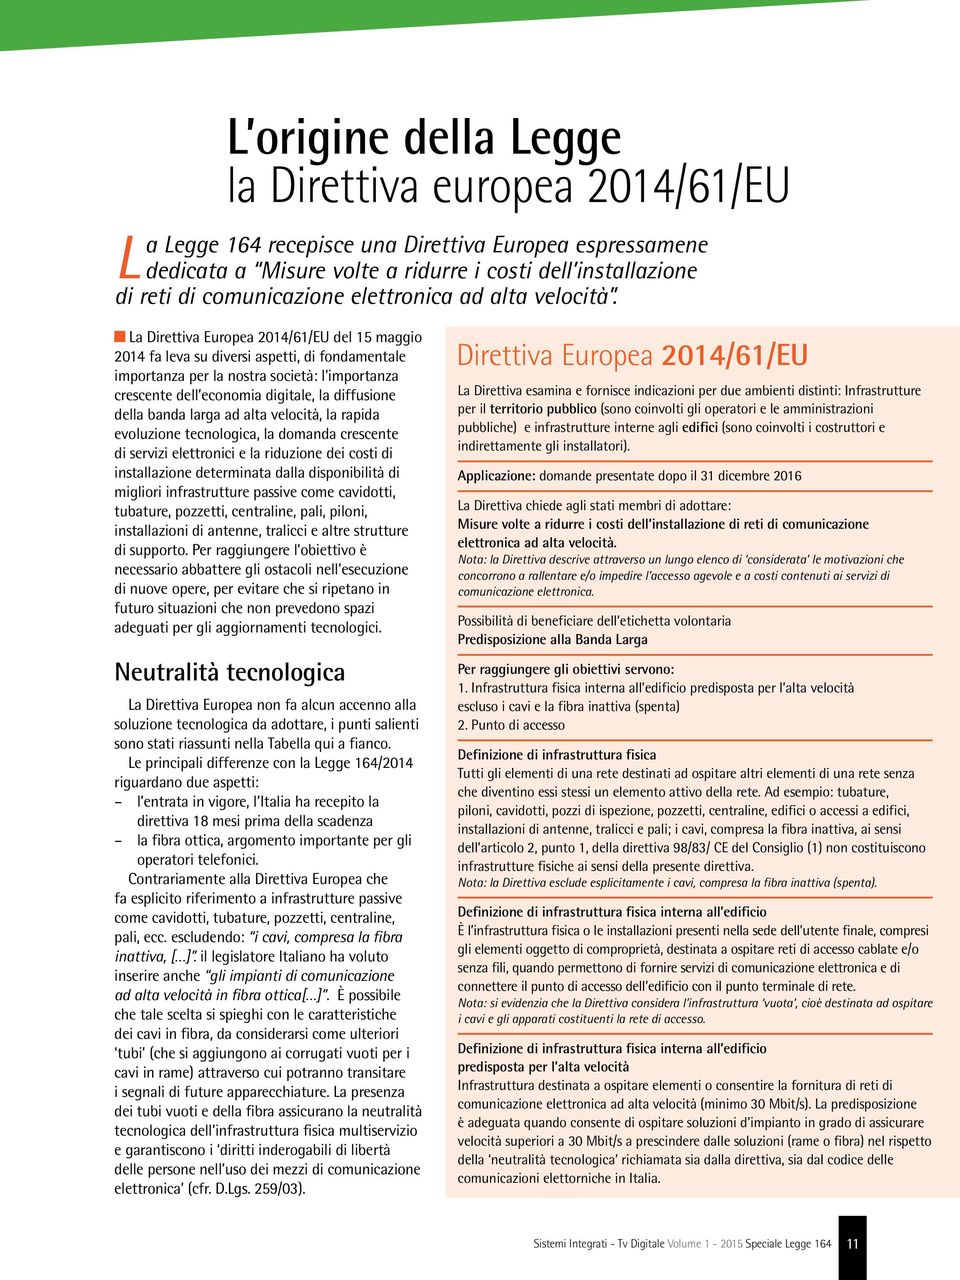 La Direttiva Europea 2014/61/EU del 15 maggio 2014 fa leva su diversi aspetti, di fondamentale importanza per la nostra società: l importanza crescente dell economia digitale, la diffusione della